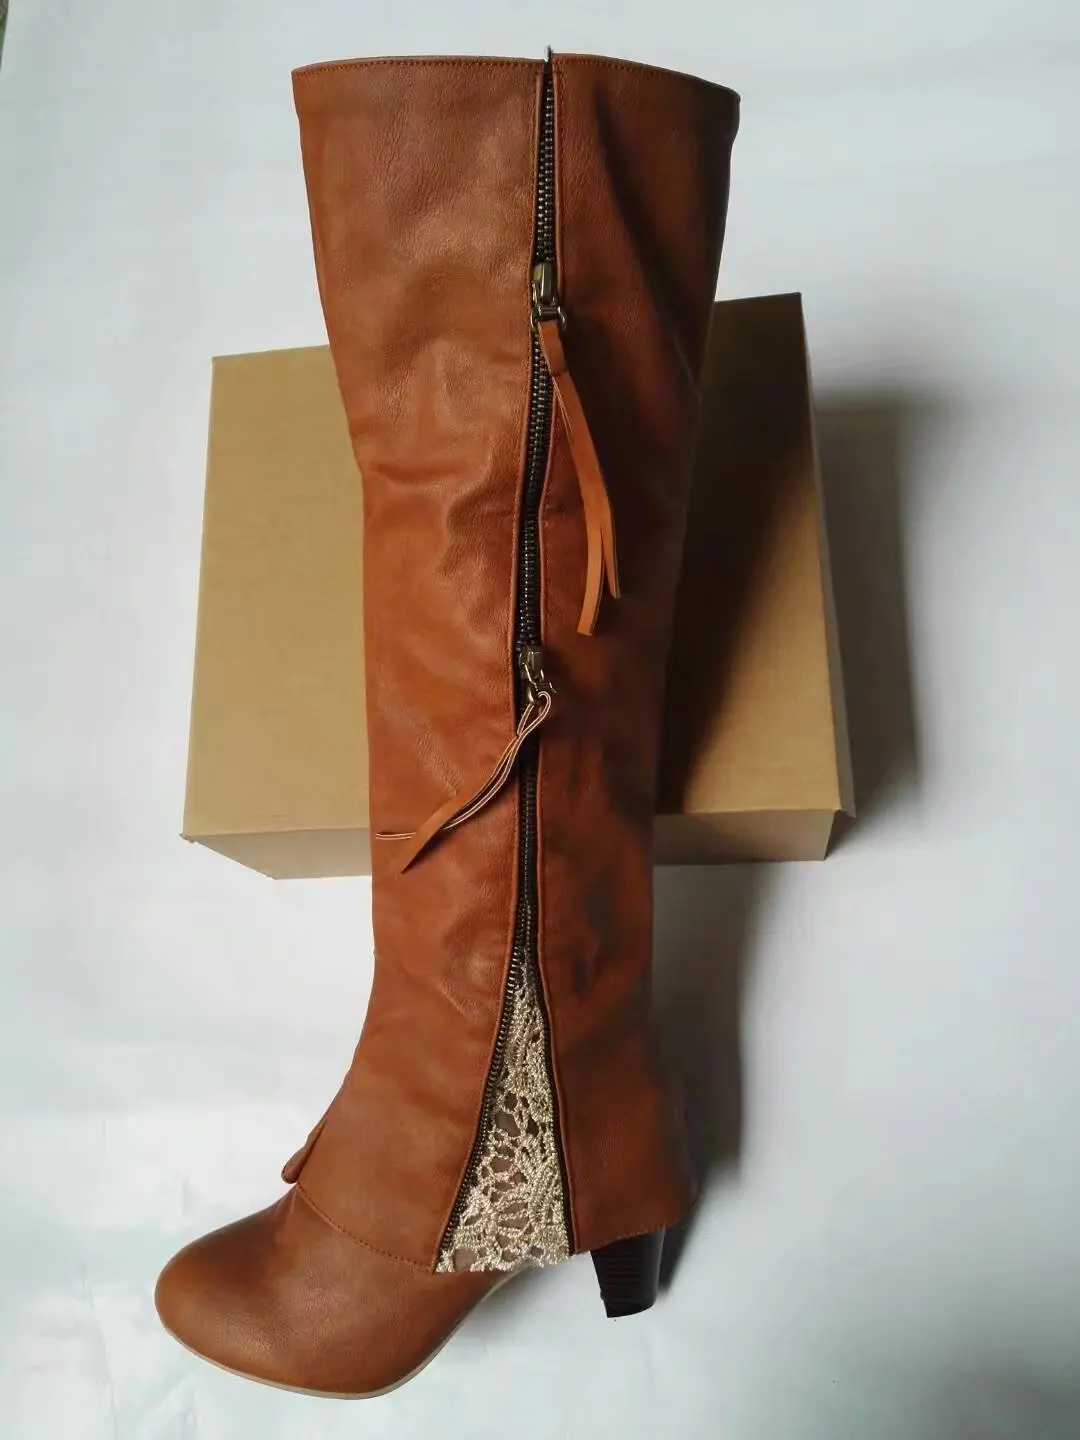 SWONCO/женские высокие сапоги, большой размер 43, модные женские сапоги из искусственной кожи на молнии женские осенние сапоги до колена на низком каблуке Женская обувь - Цвет: Brown